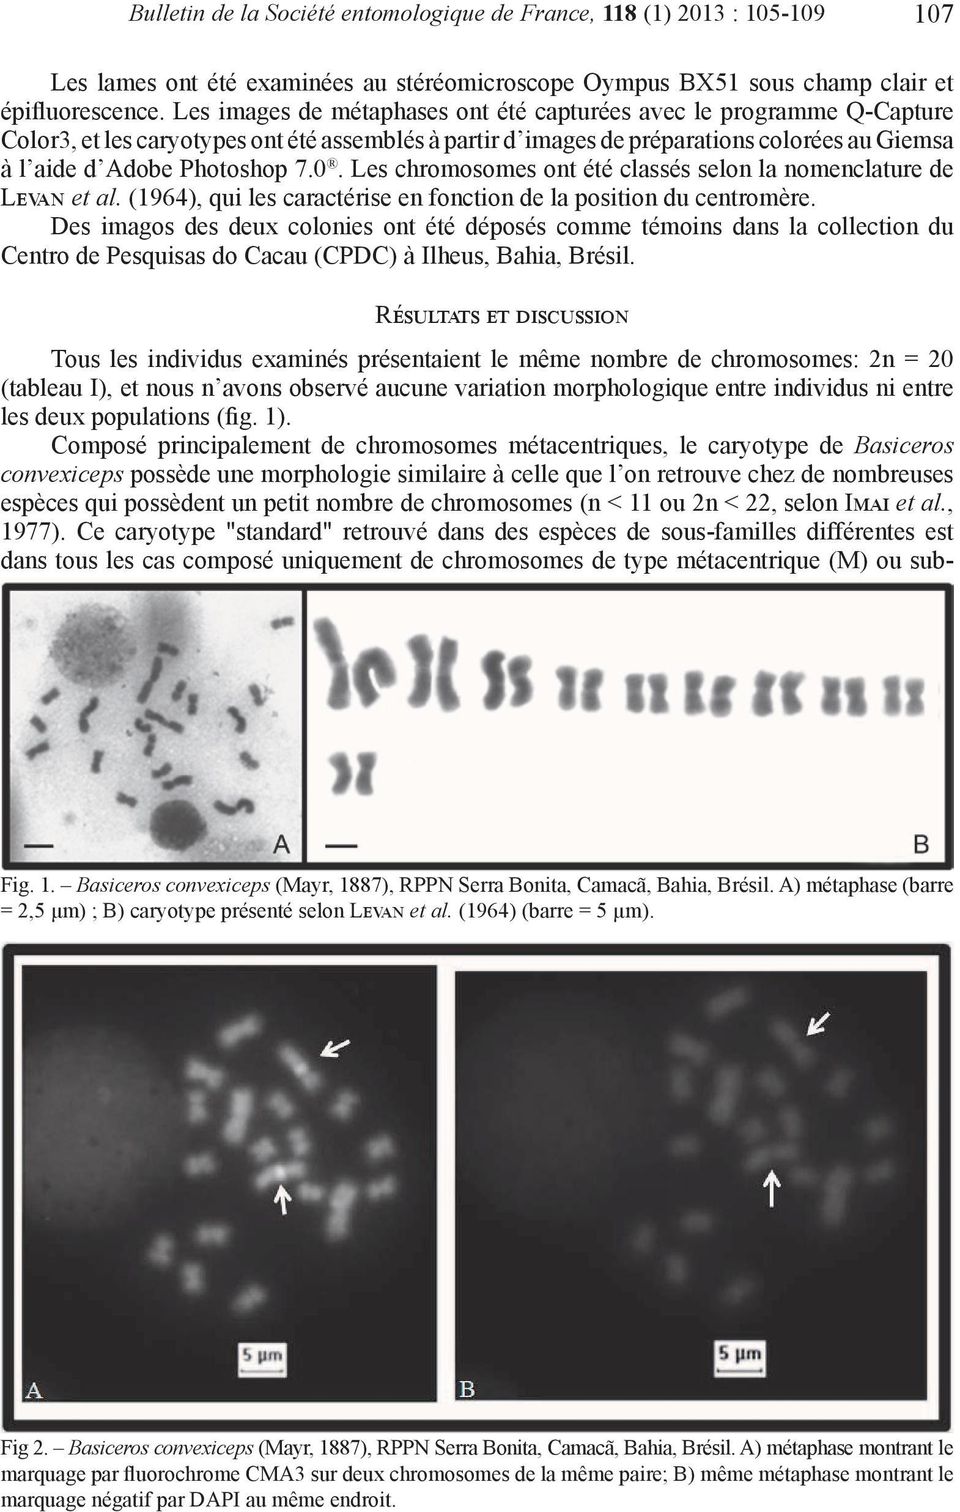 Les chromosomes ont été classés selon la nomenclature de Levan et al. (1964), qui les caractérise en fonction de la position du centromère.